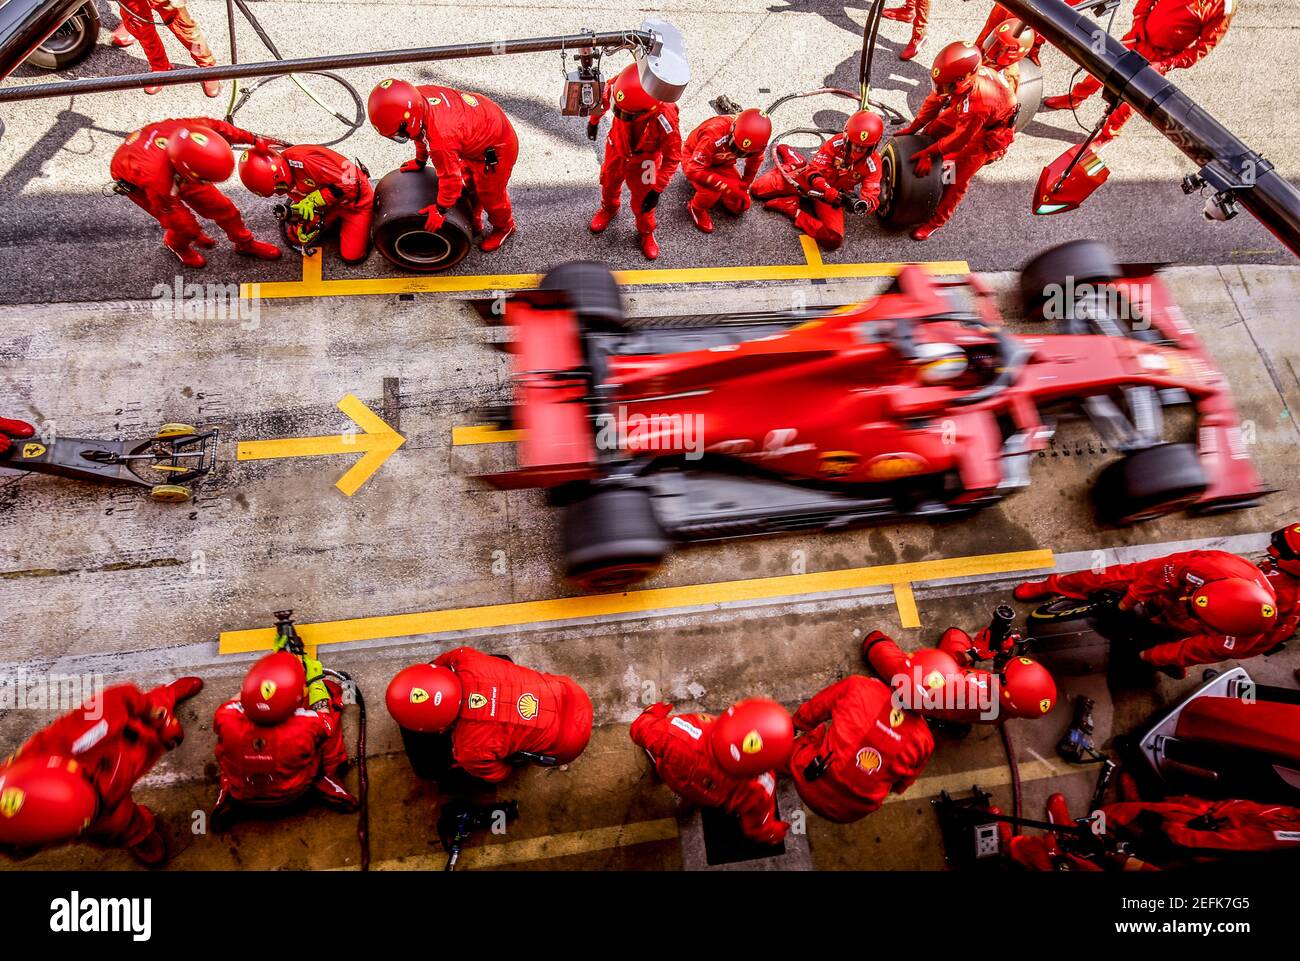 05 VETTEL Sebastian (ger), Scuderia Ferrari SF1000, action pit stop ...